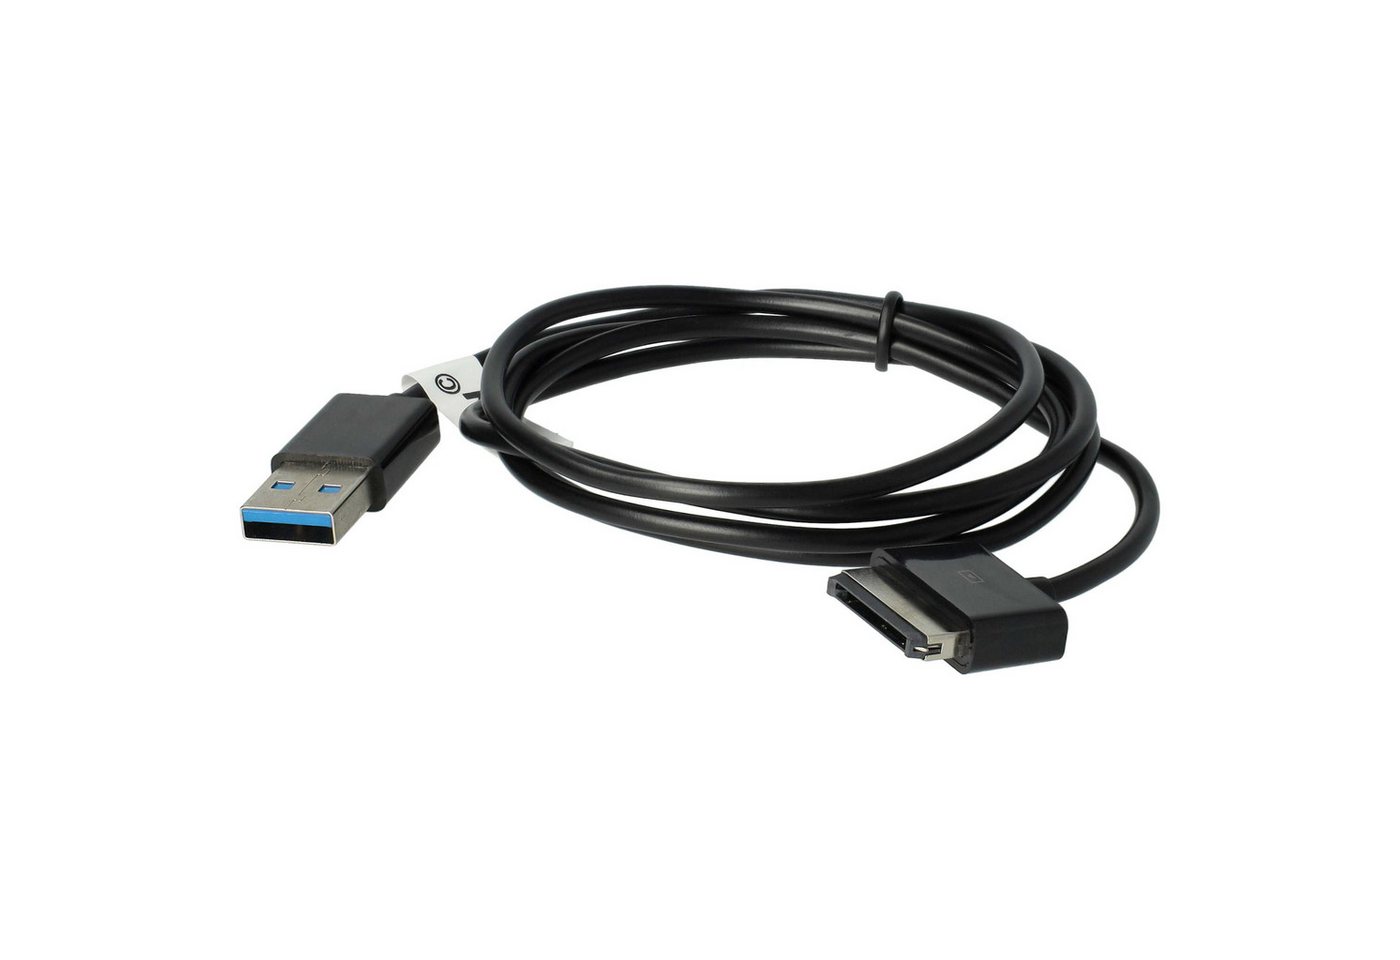 vhbw passend für Asus Eee Pad Transformer TF201, TF300, TF300T USB-Kabel von vhbw